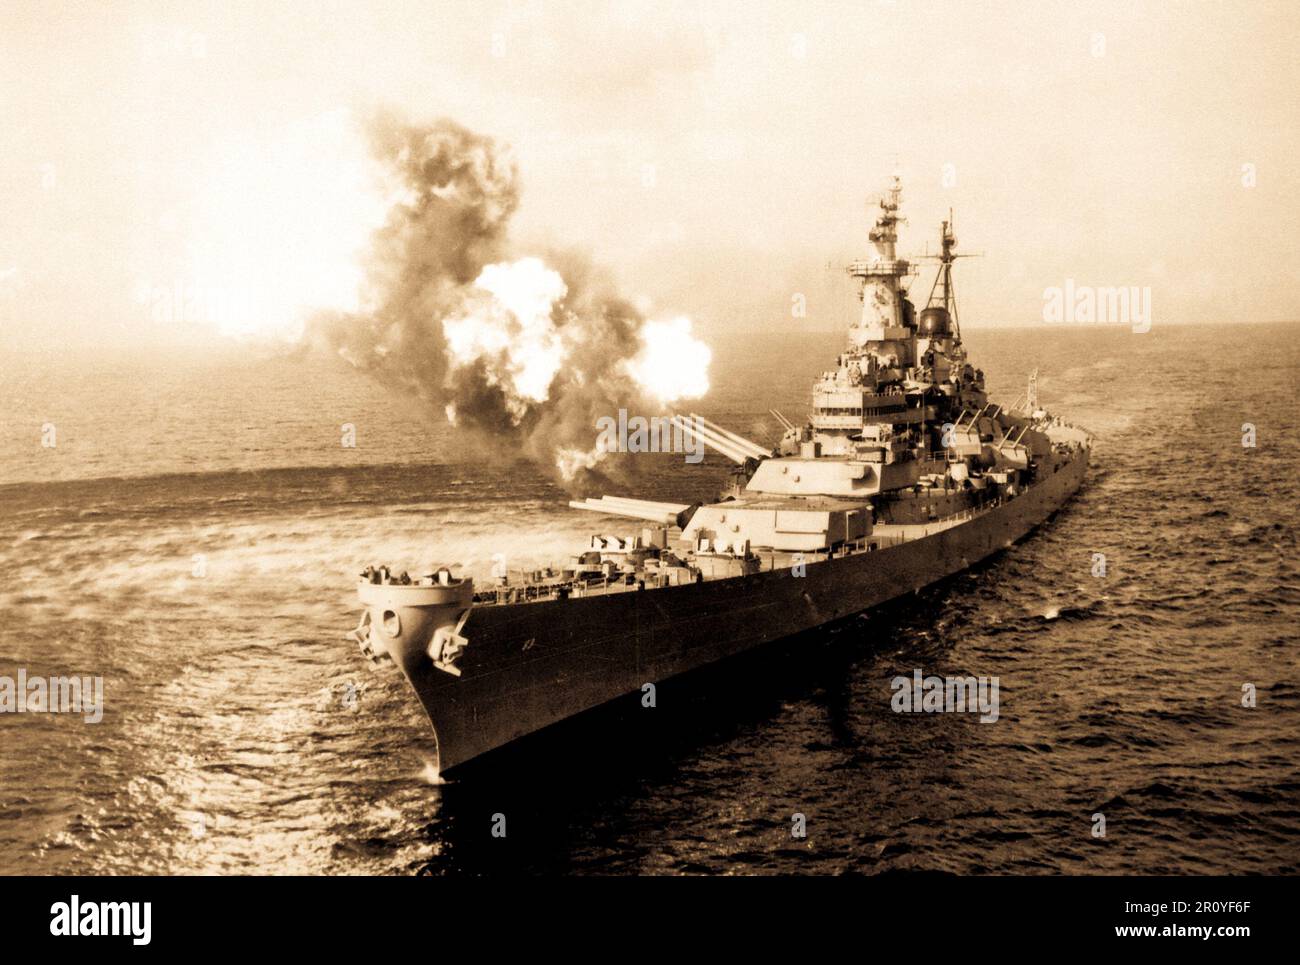 Von der USS Missouri an der Küste von Chong Jin, Korea, wird ein 16-Zoll-Schusswaffensalvo abgefeuert, um die Kommunikation mit Nordkorea zu unterbrechen. Chong Jin ist nur 39 Meilen von der chinesischen Grenze entfernt. 21. Oktober 1950. Stockfoto